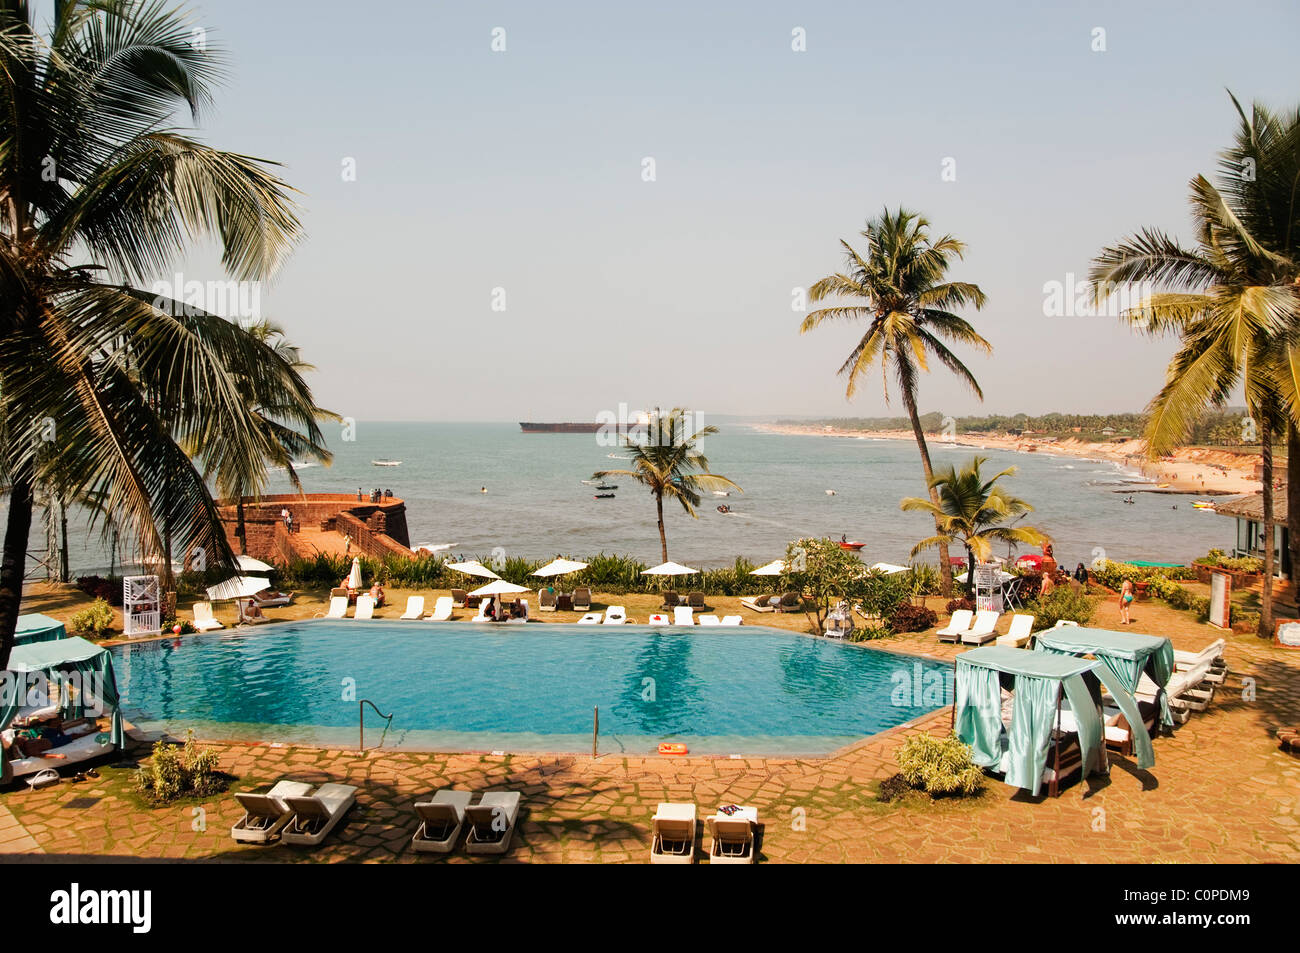 Complejo turístico en la playa, Goa, India Foto de stock